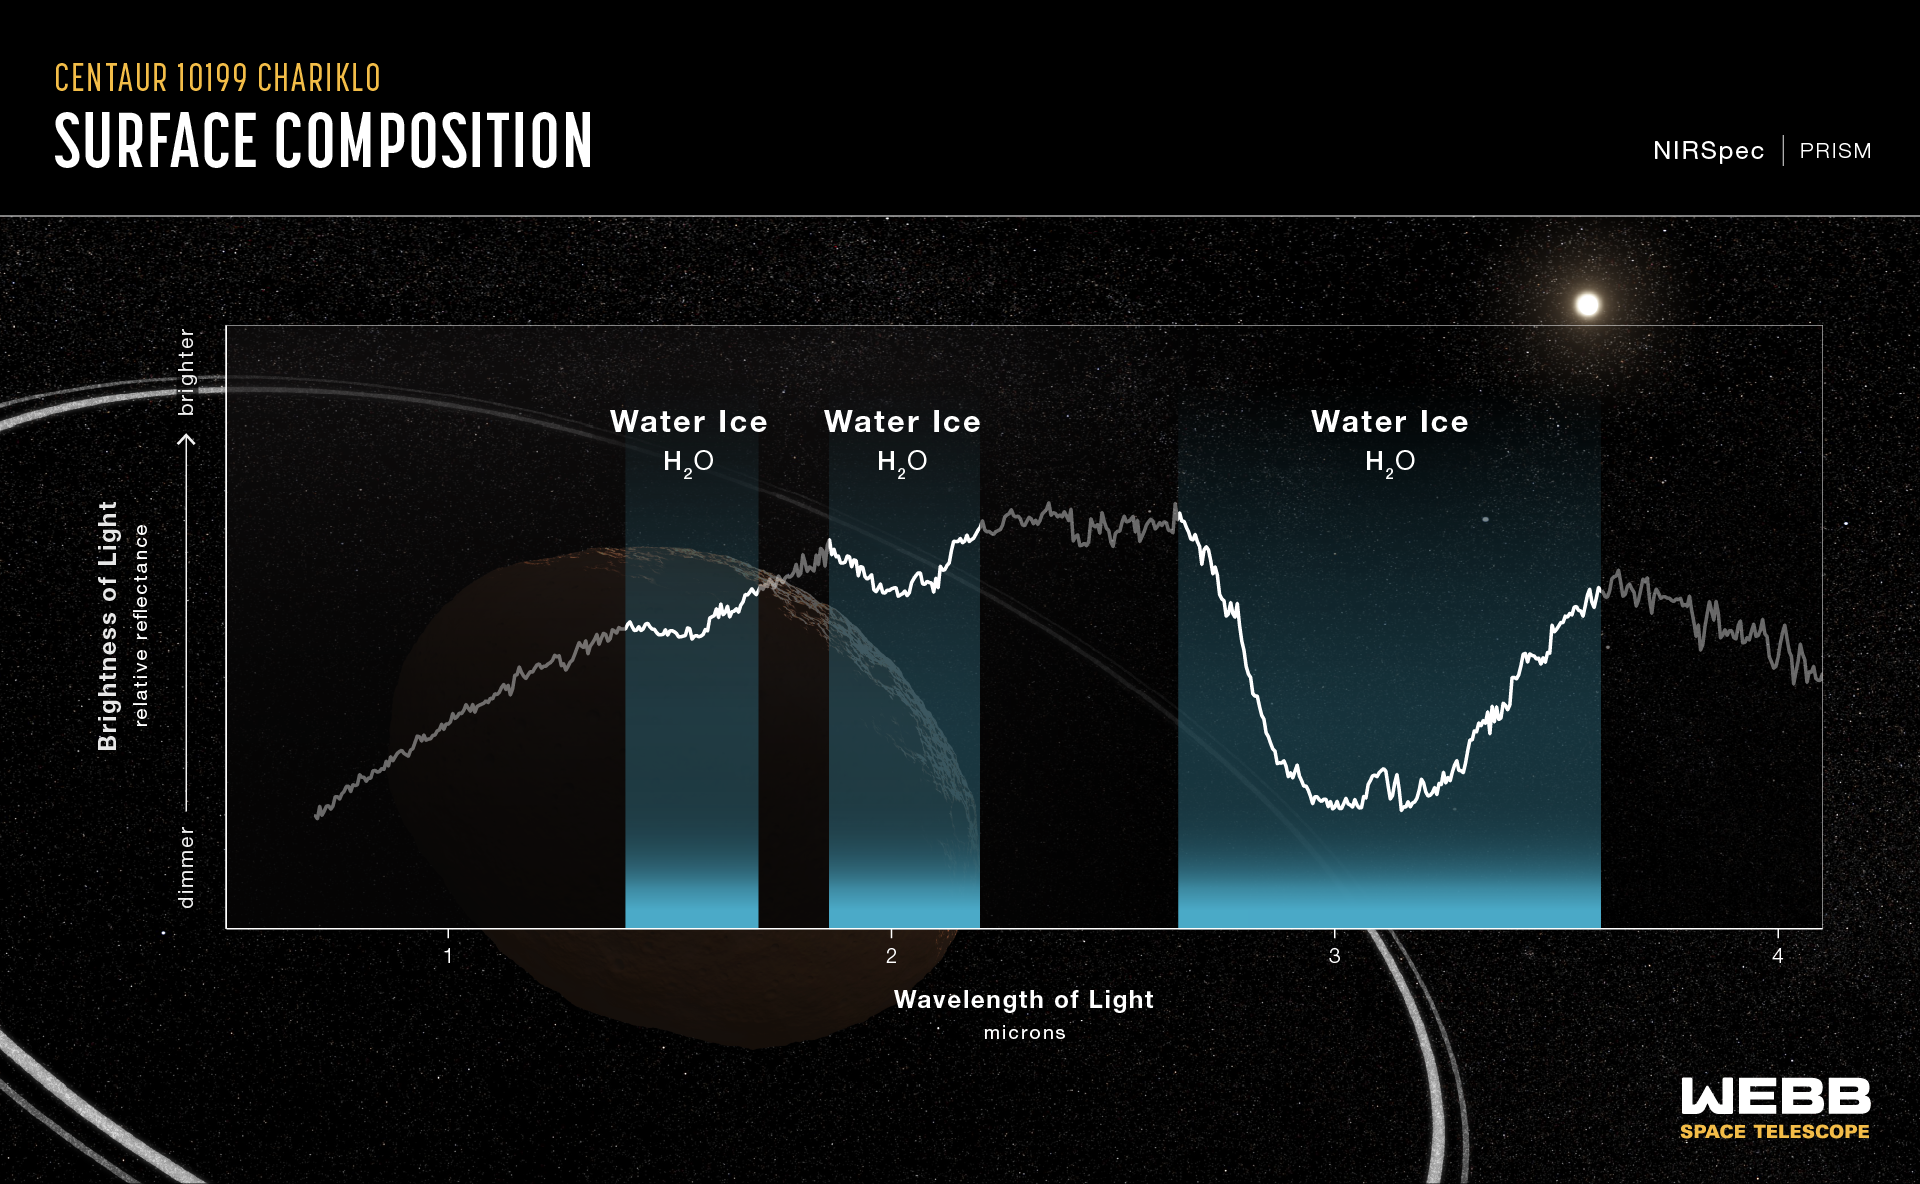 Spettro di riflettanza del Centaur 10199 Chariklo Double Ring, catturato dal Near Infrared Webb Spectrometer (NIRSpec) il 31 ottobre 2022. Questo spettro mostra una chiara evidenza di ghiaccio d'acqua cristallizzato sulla superficie di Chariklo.